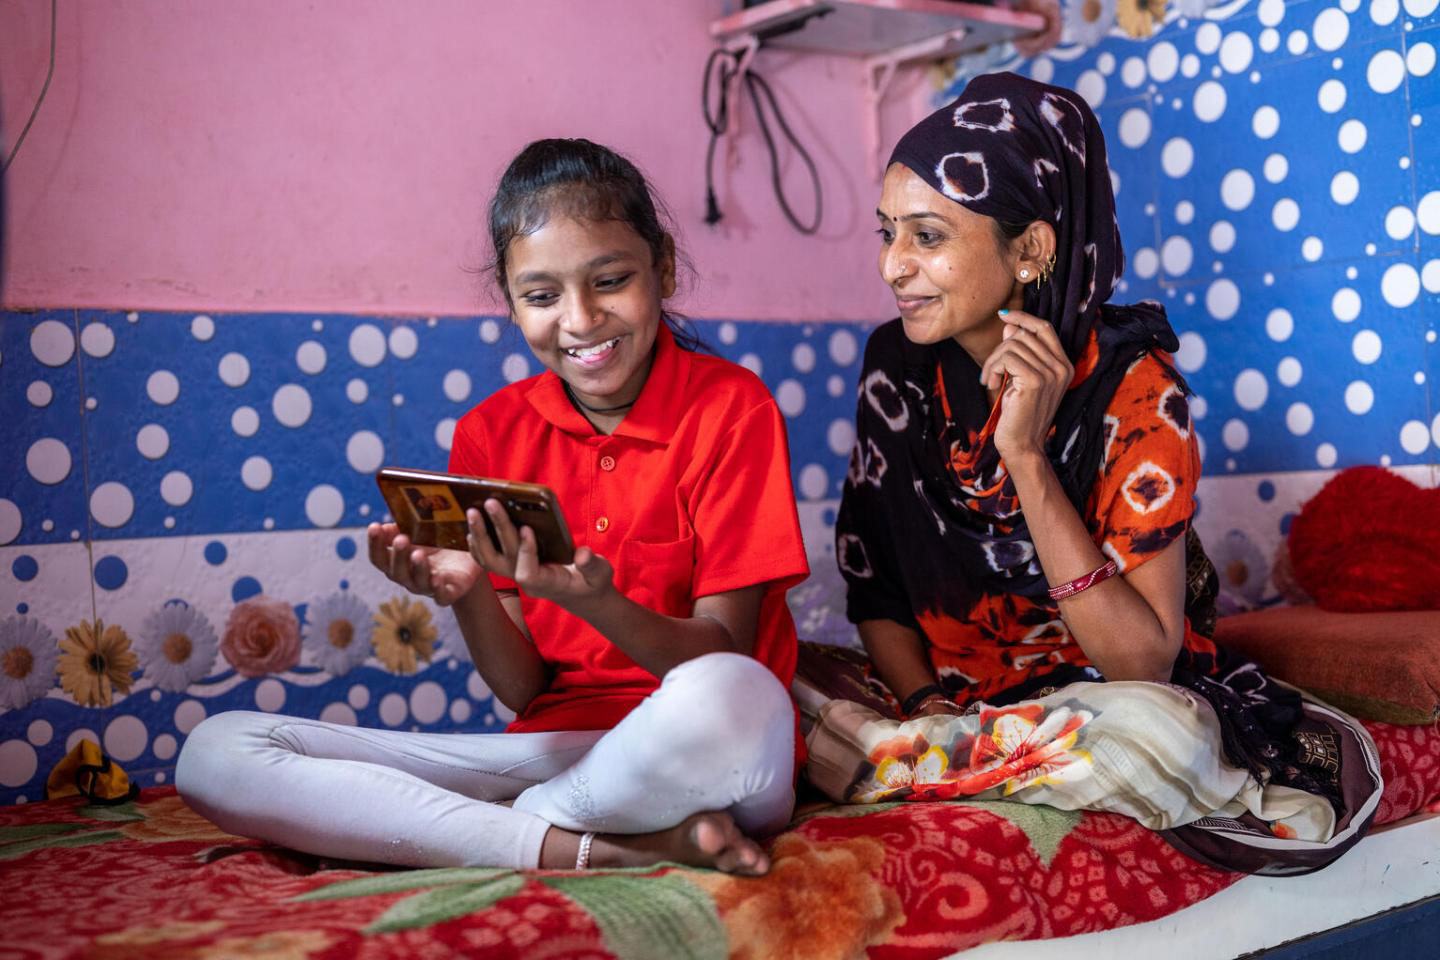 کووڈ۔19 وباء کے دوران جب تعلیم ادارے بند تھے تو ایسے میں انڈیا میں ایک ماں اپنی بیٹی کی آن لائن پڑھائی میں مدد کر رہی ہے۔